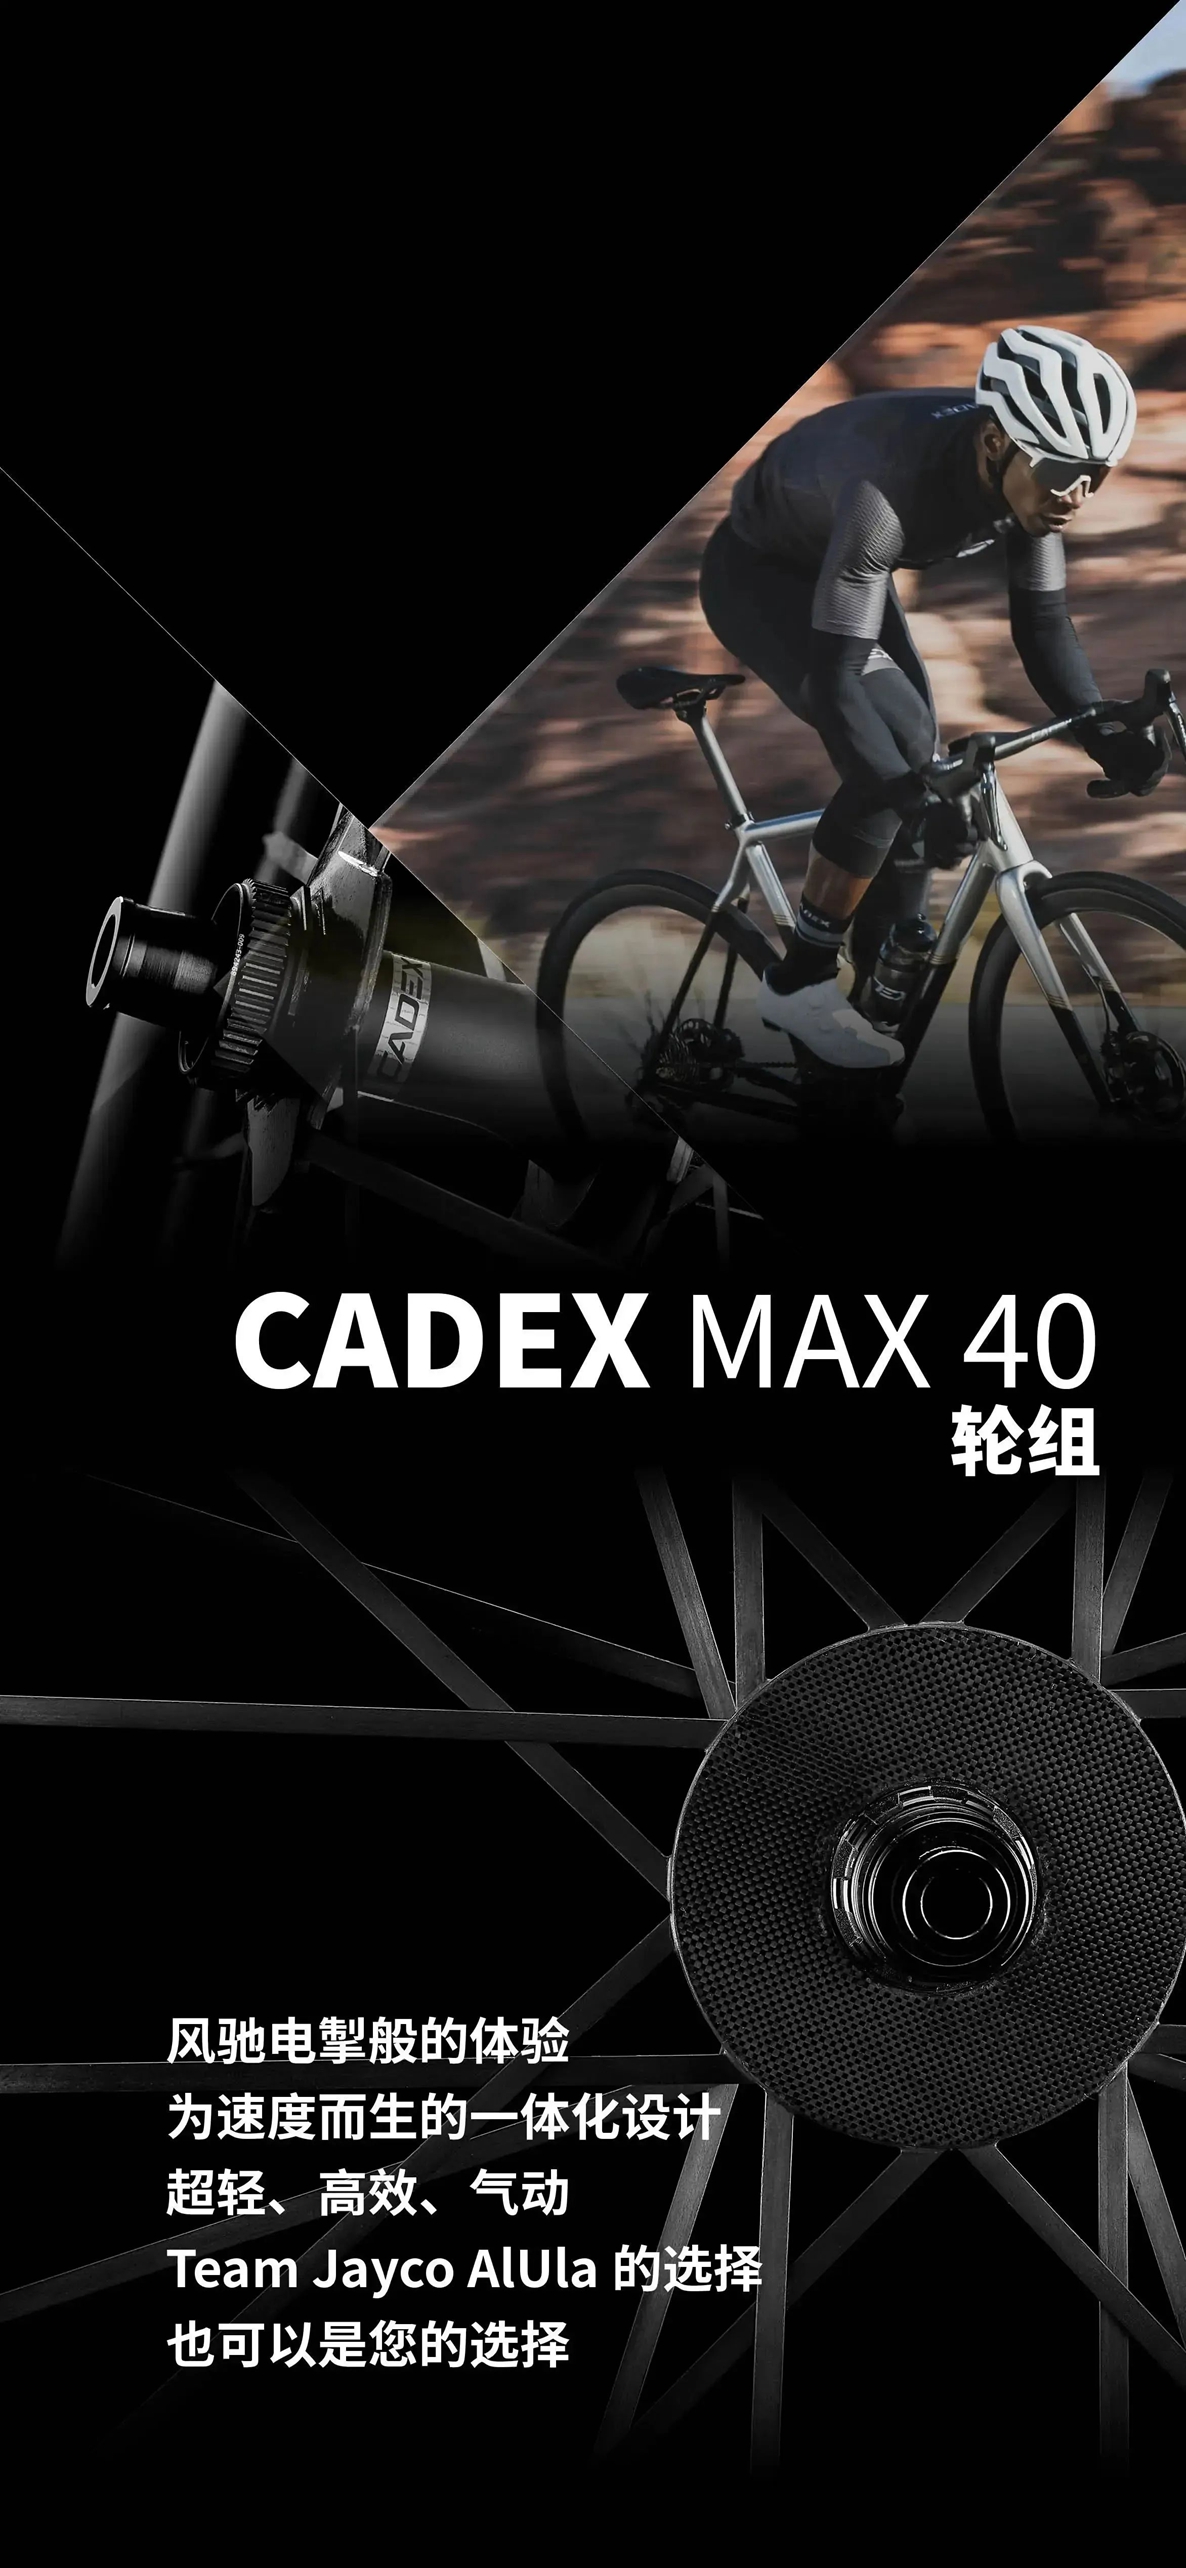 新品盛放 | CADEX Max 40轮组领衔上市